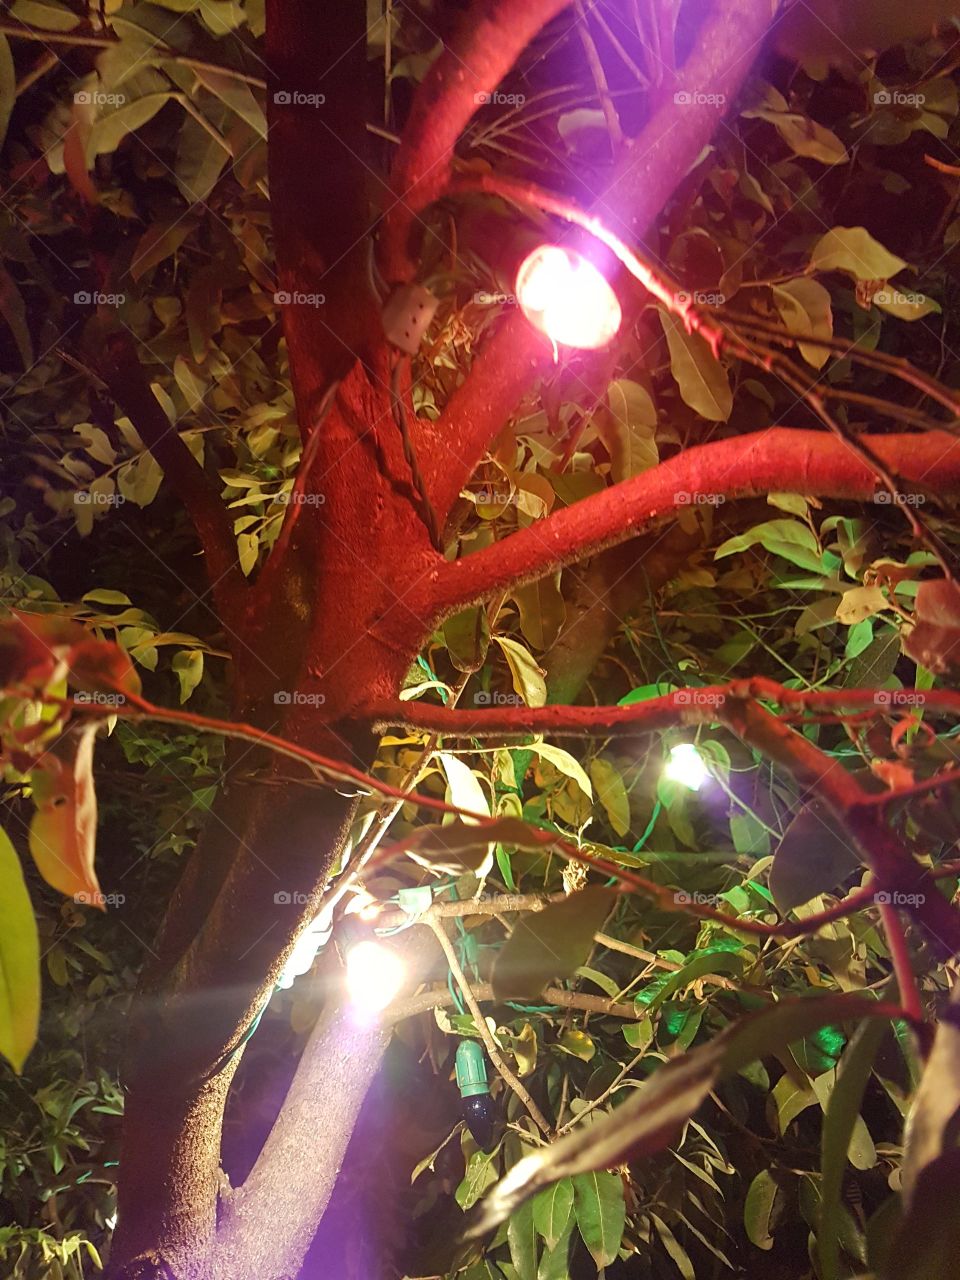 Lights on the tree